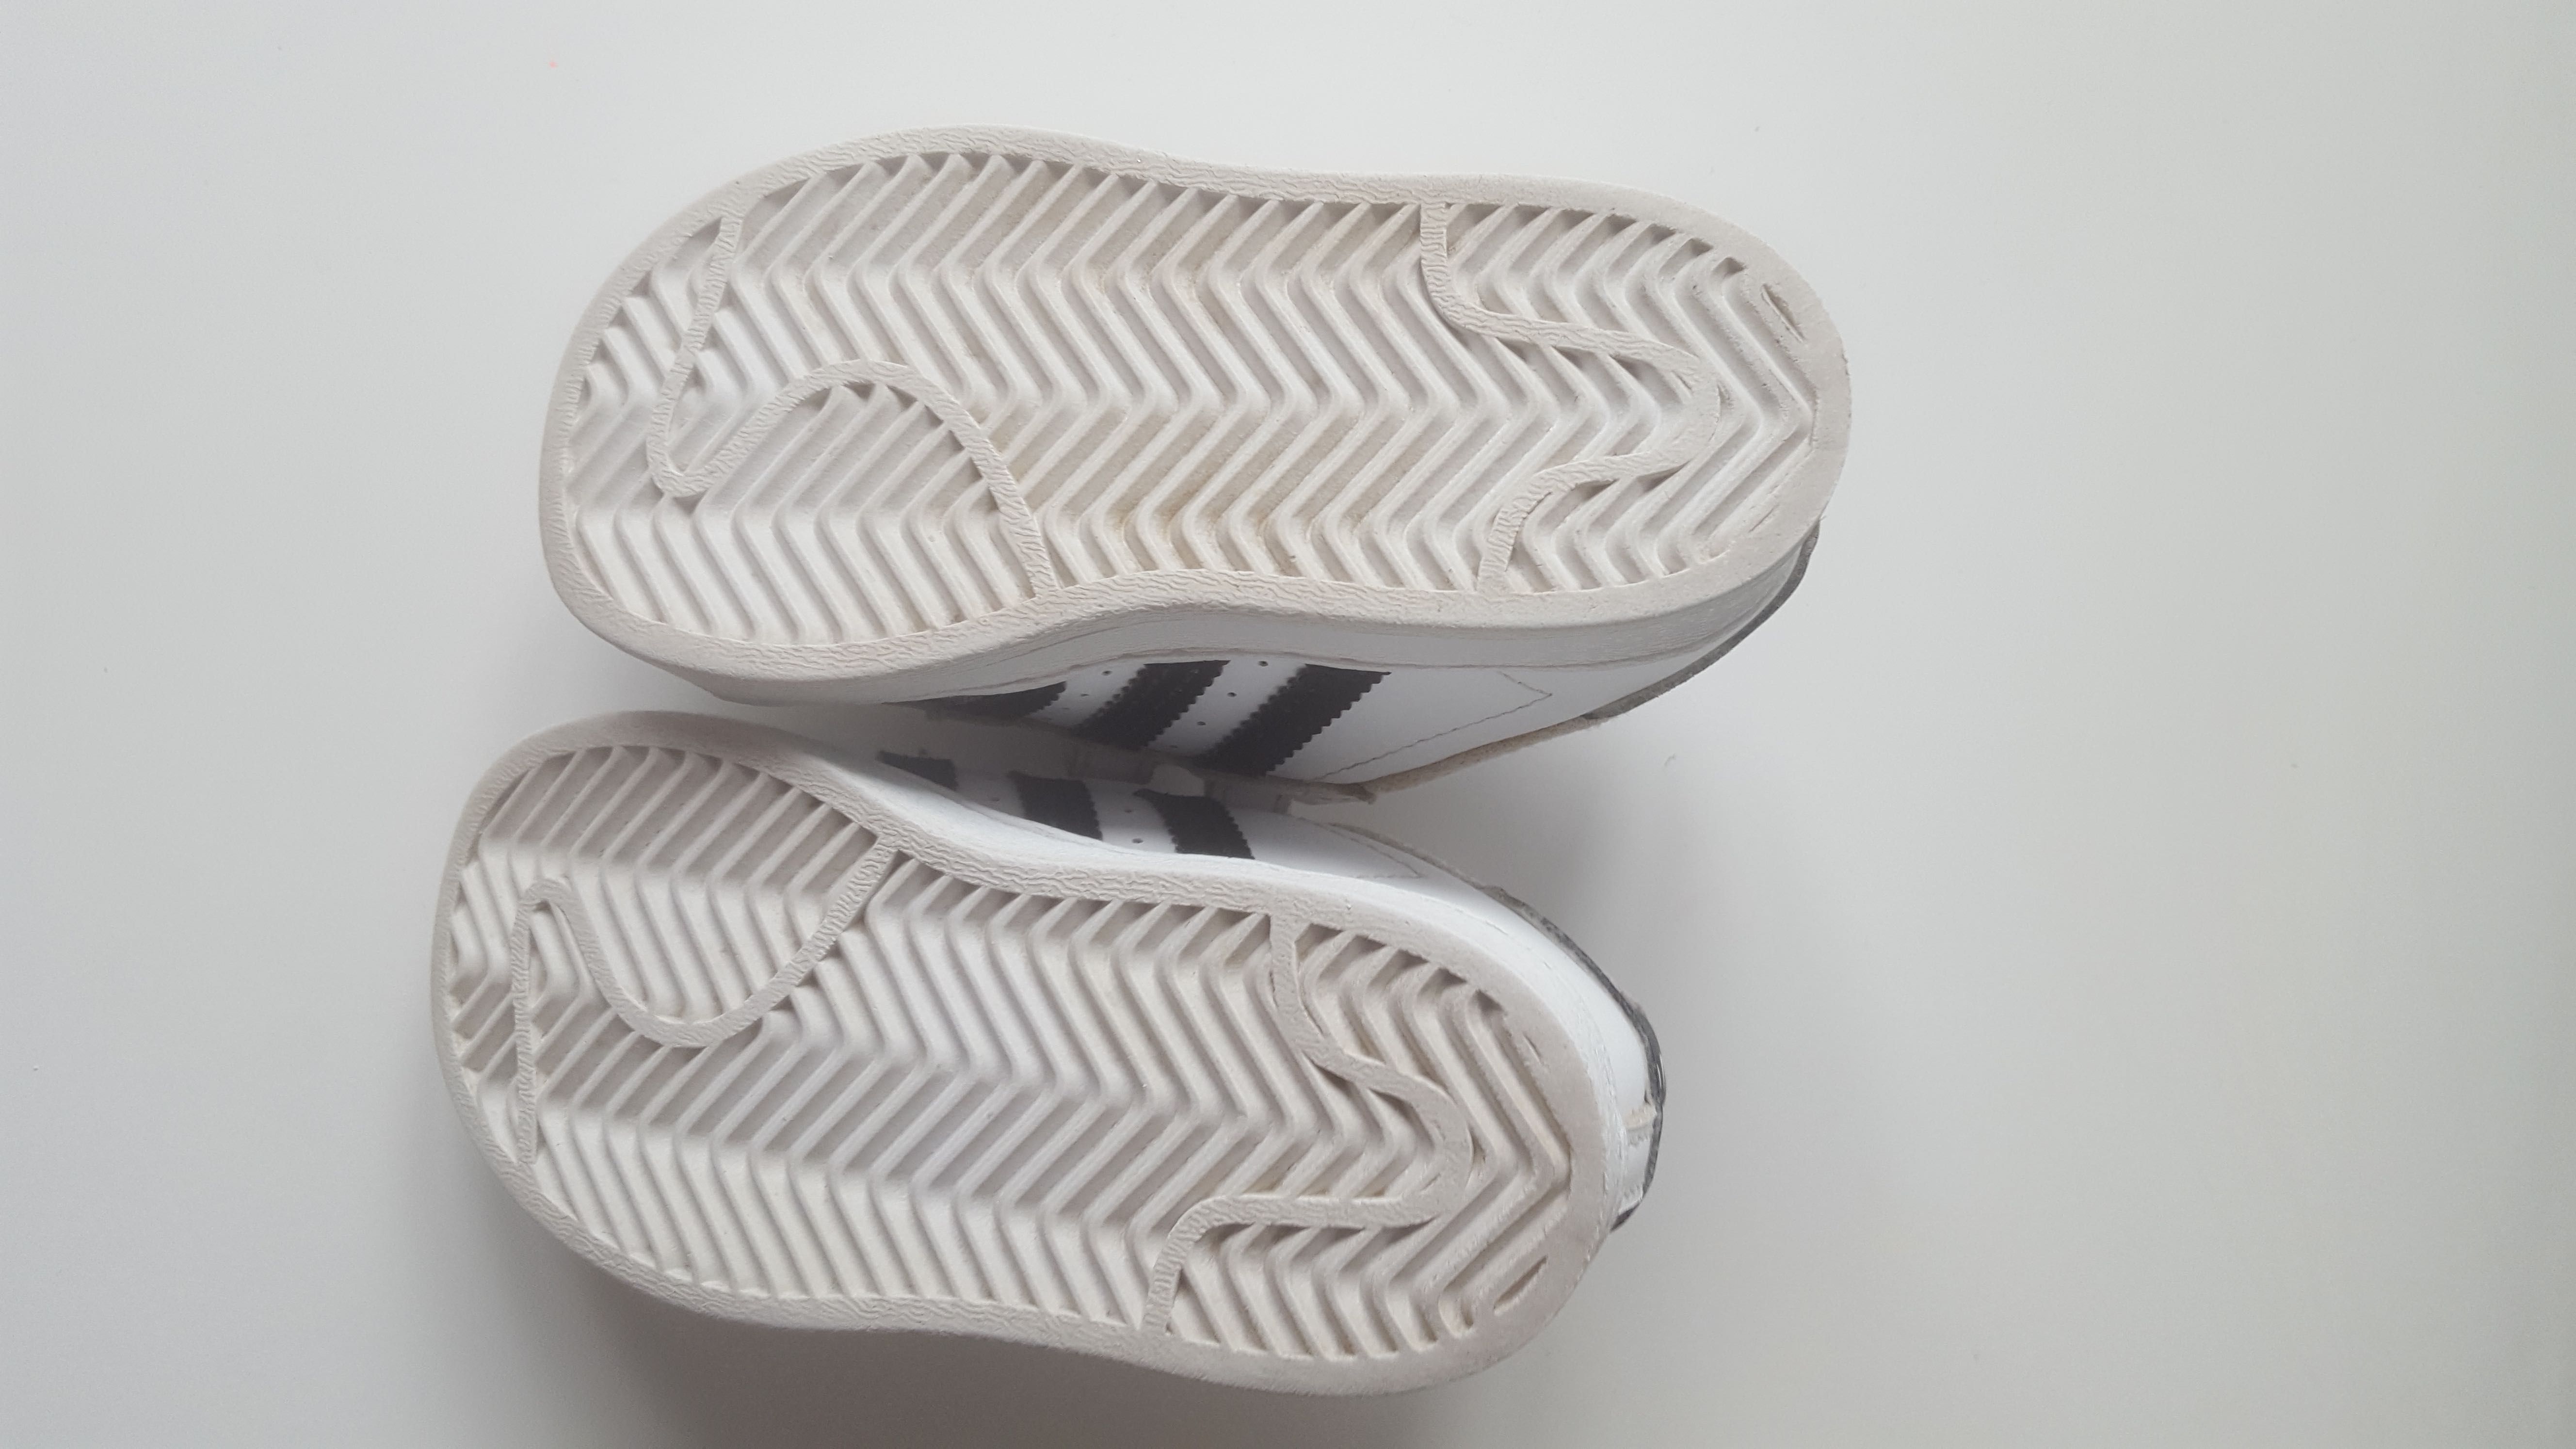 Buty Adidas Superstar rzepy r.22 lub 26 używane